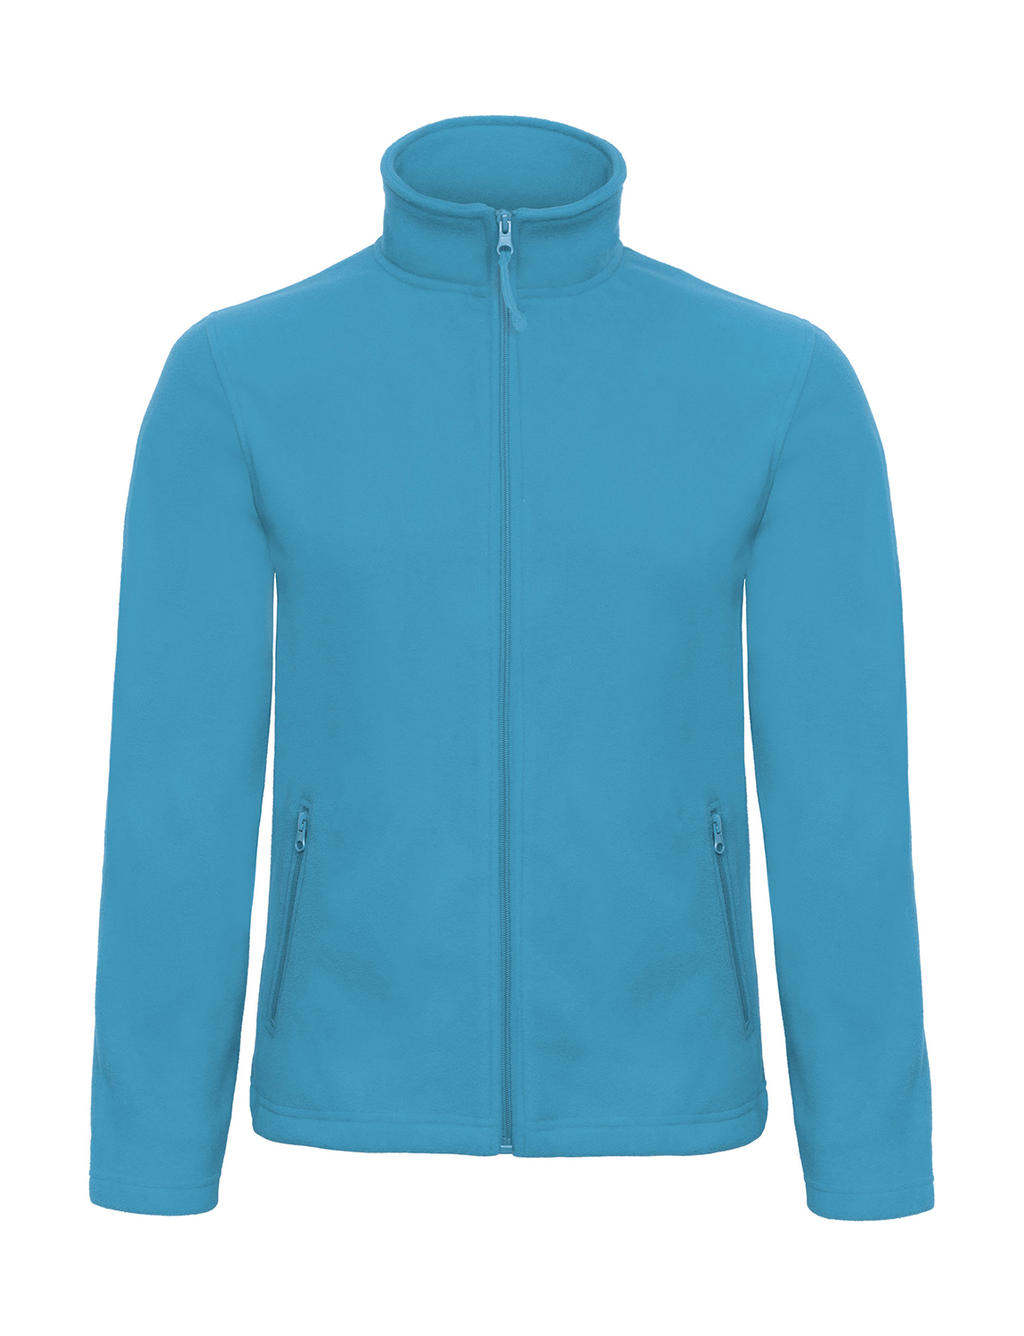 Mikina pánská B&C Micro Fleece - světle modrá, XL